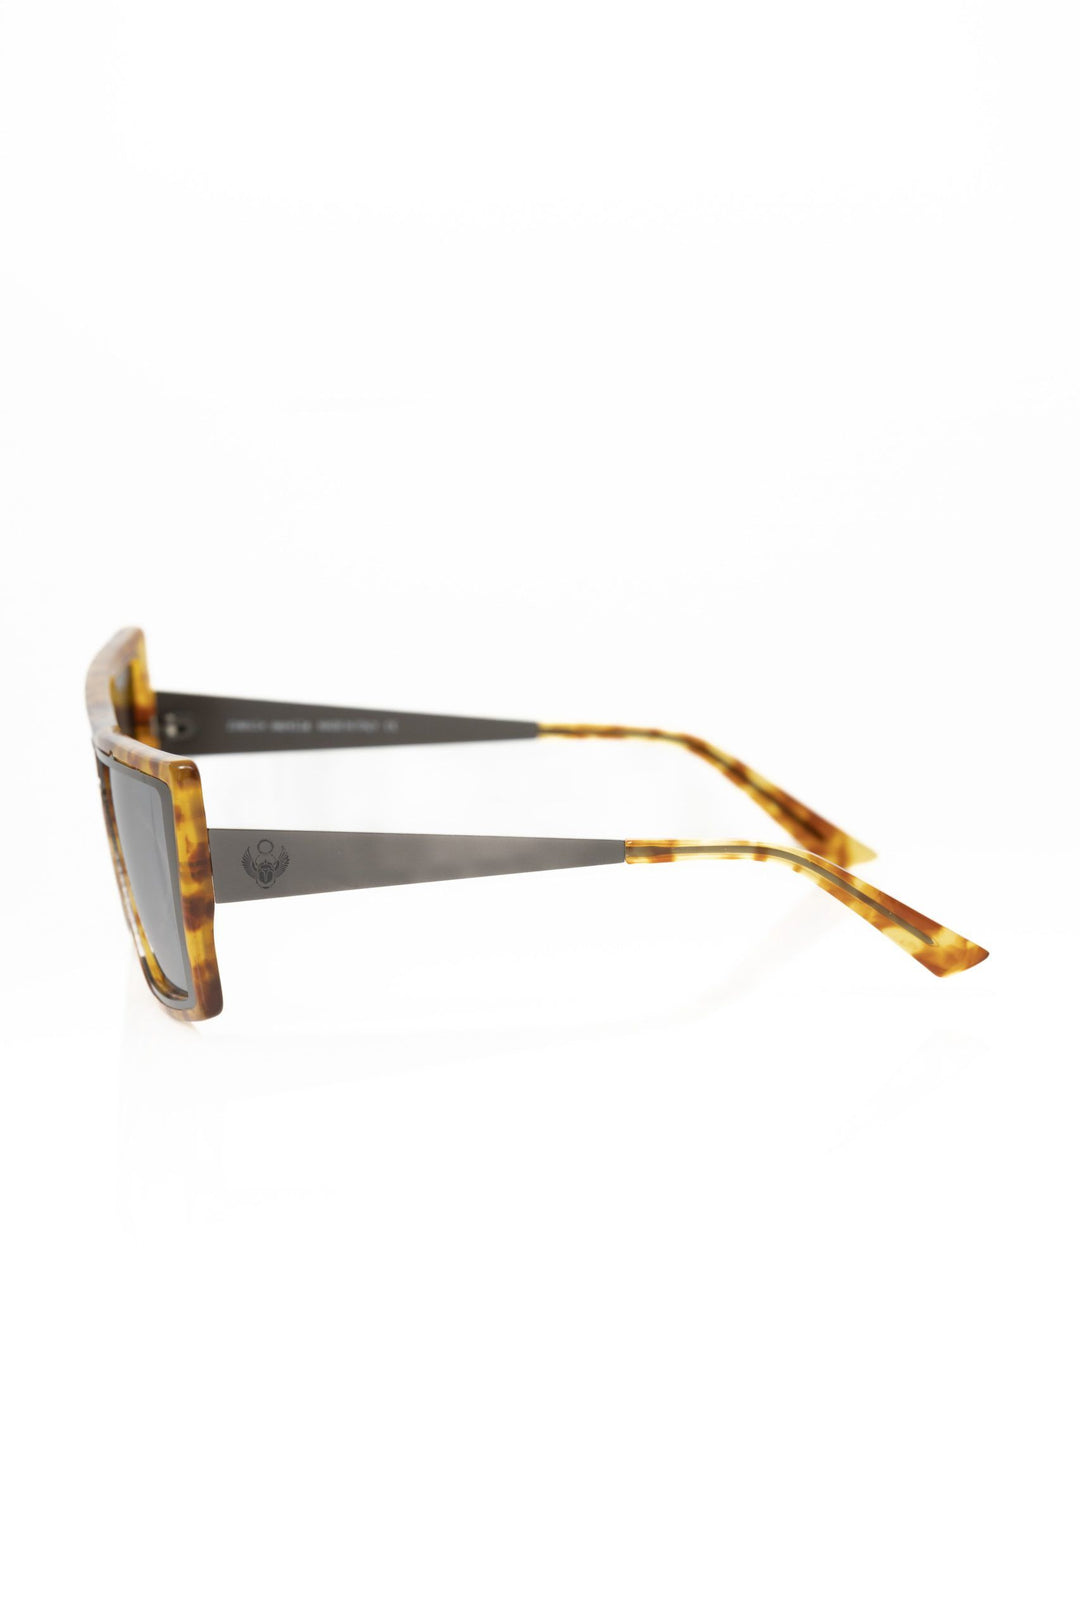 Frankie Morello Chic Tortoise Shell Square Sunglasses